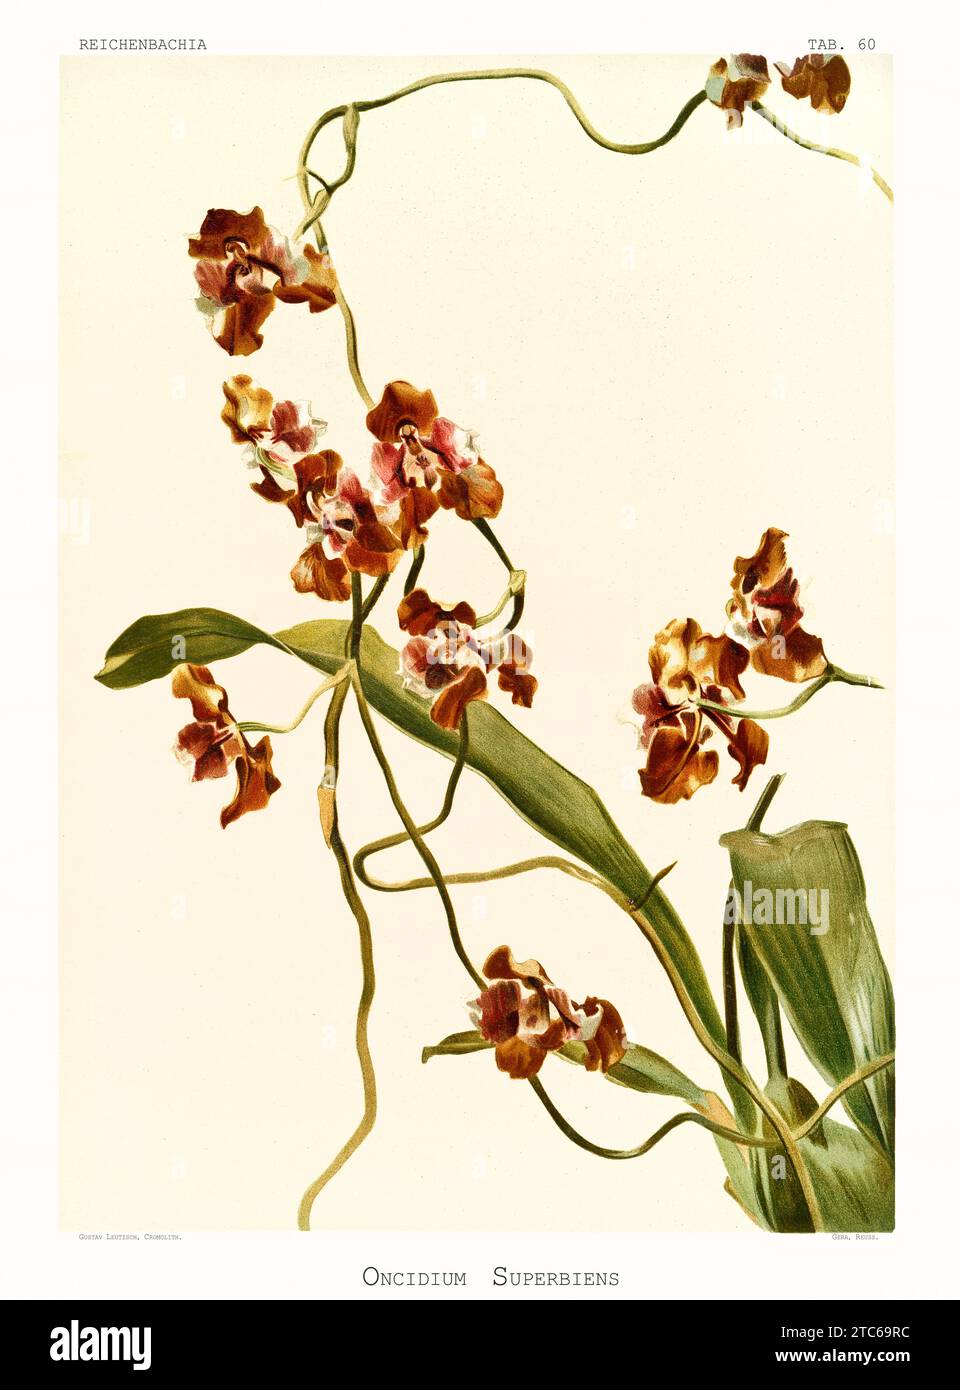 Illustration ancienne de Schonburgkia de Galeotti (Myrmecophila galeottiana). Reichenbachia, de F. Sander. St. Albans, Royaume-Uni, 1888 - 1894 Banque D'Images